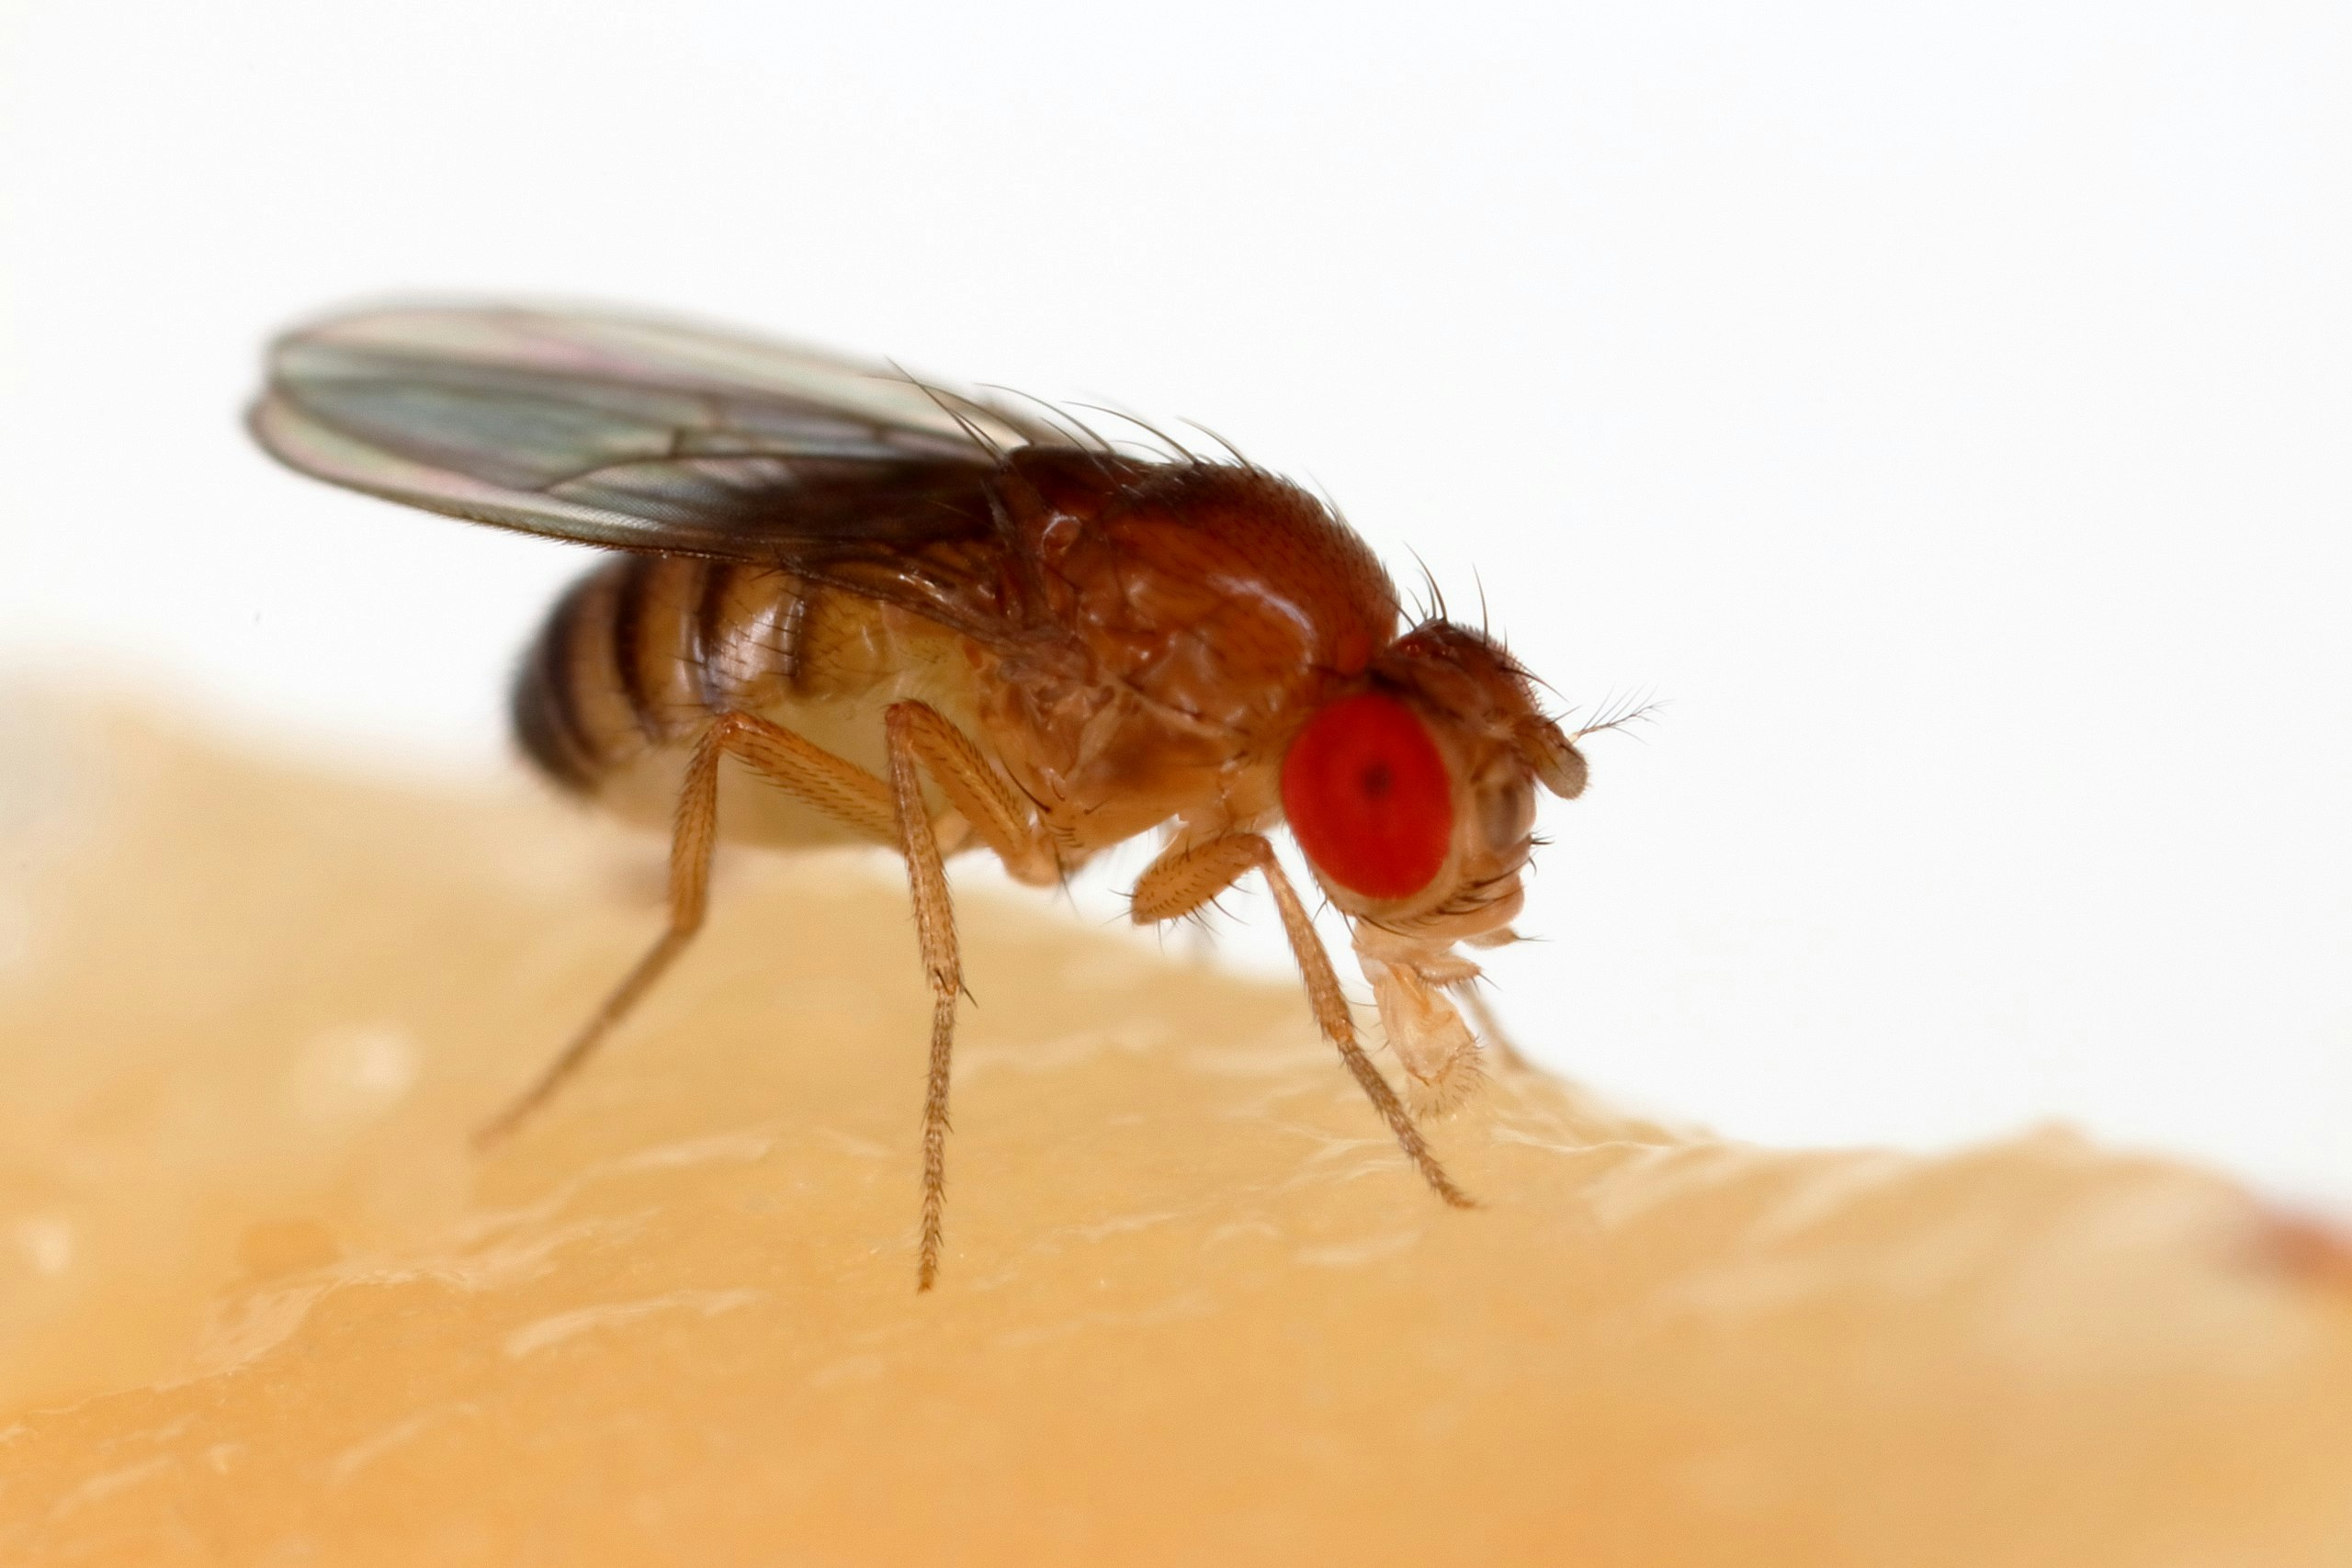 A fruit fly, Drosophila melanogaster